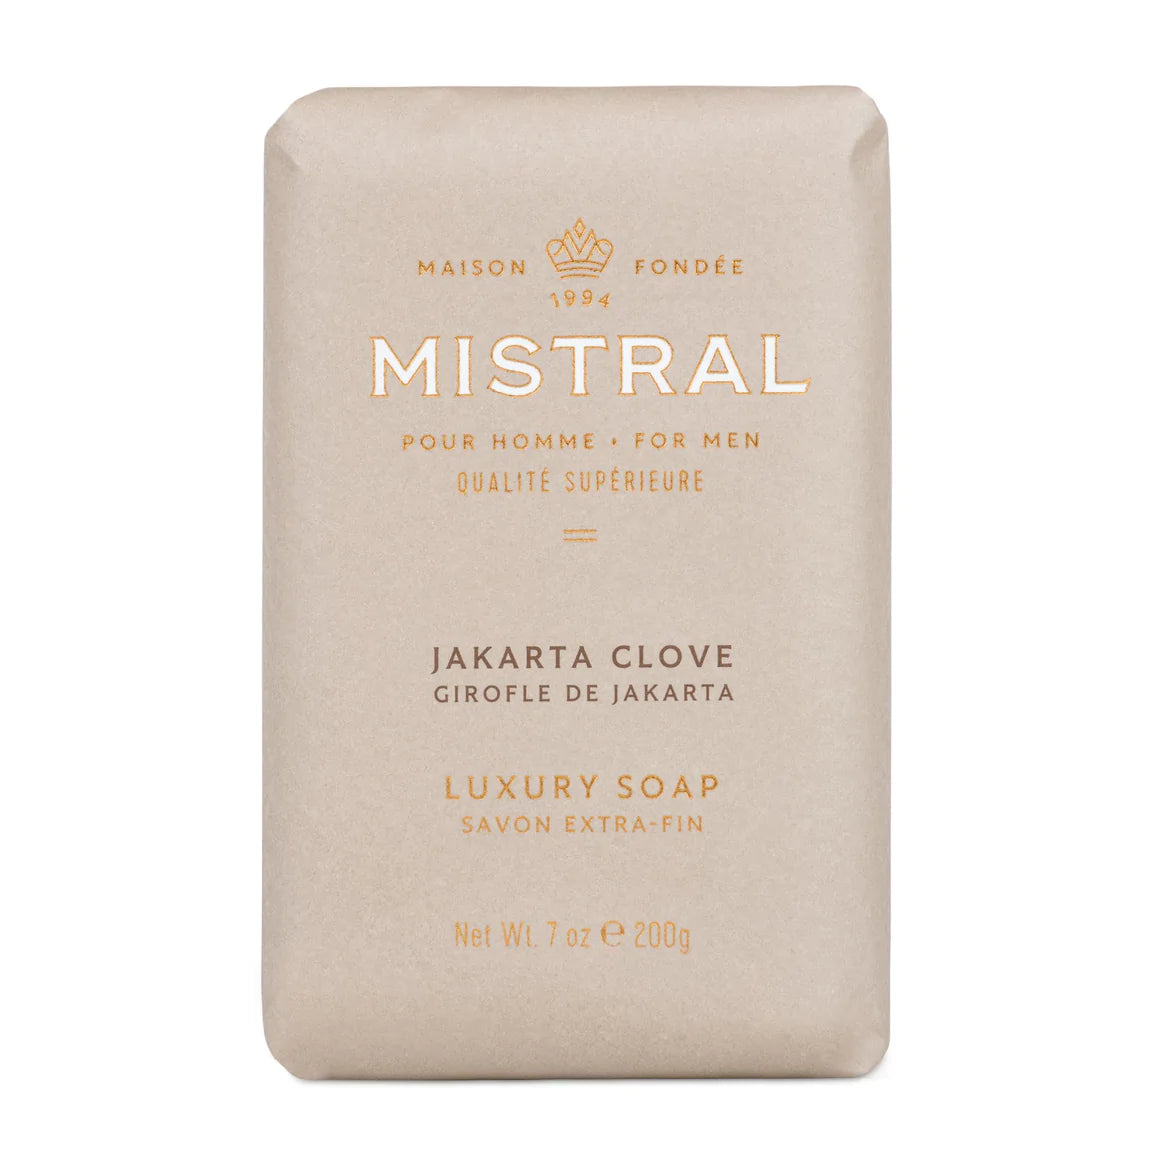 Mistral - Men's Bar Soap